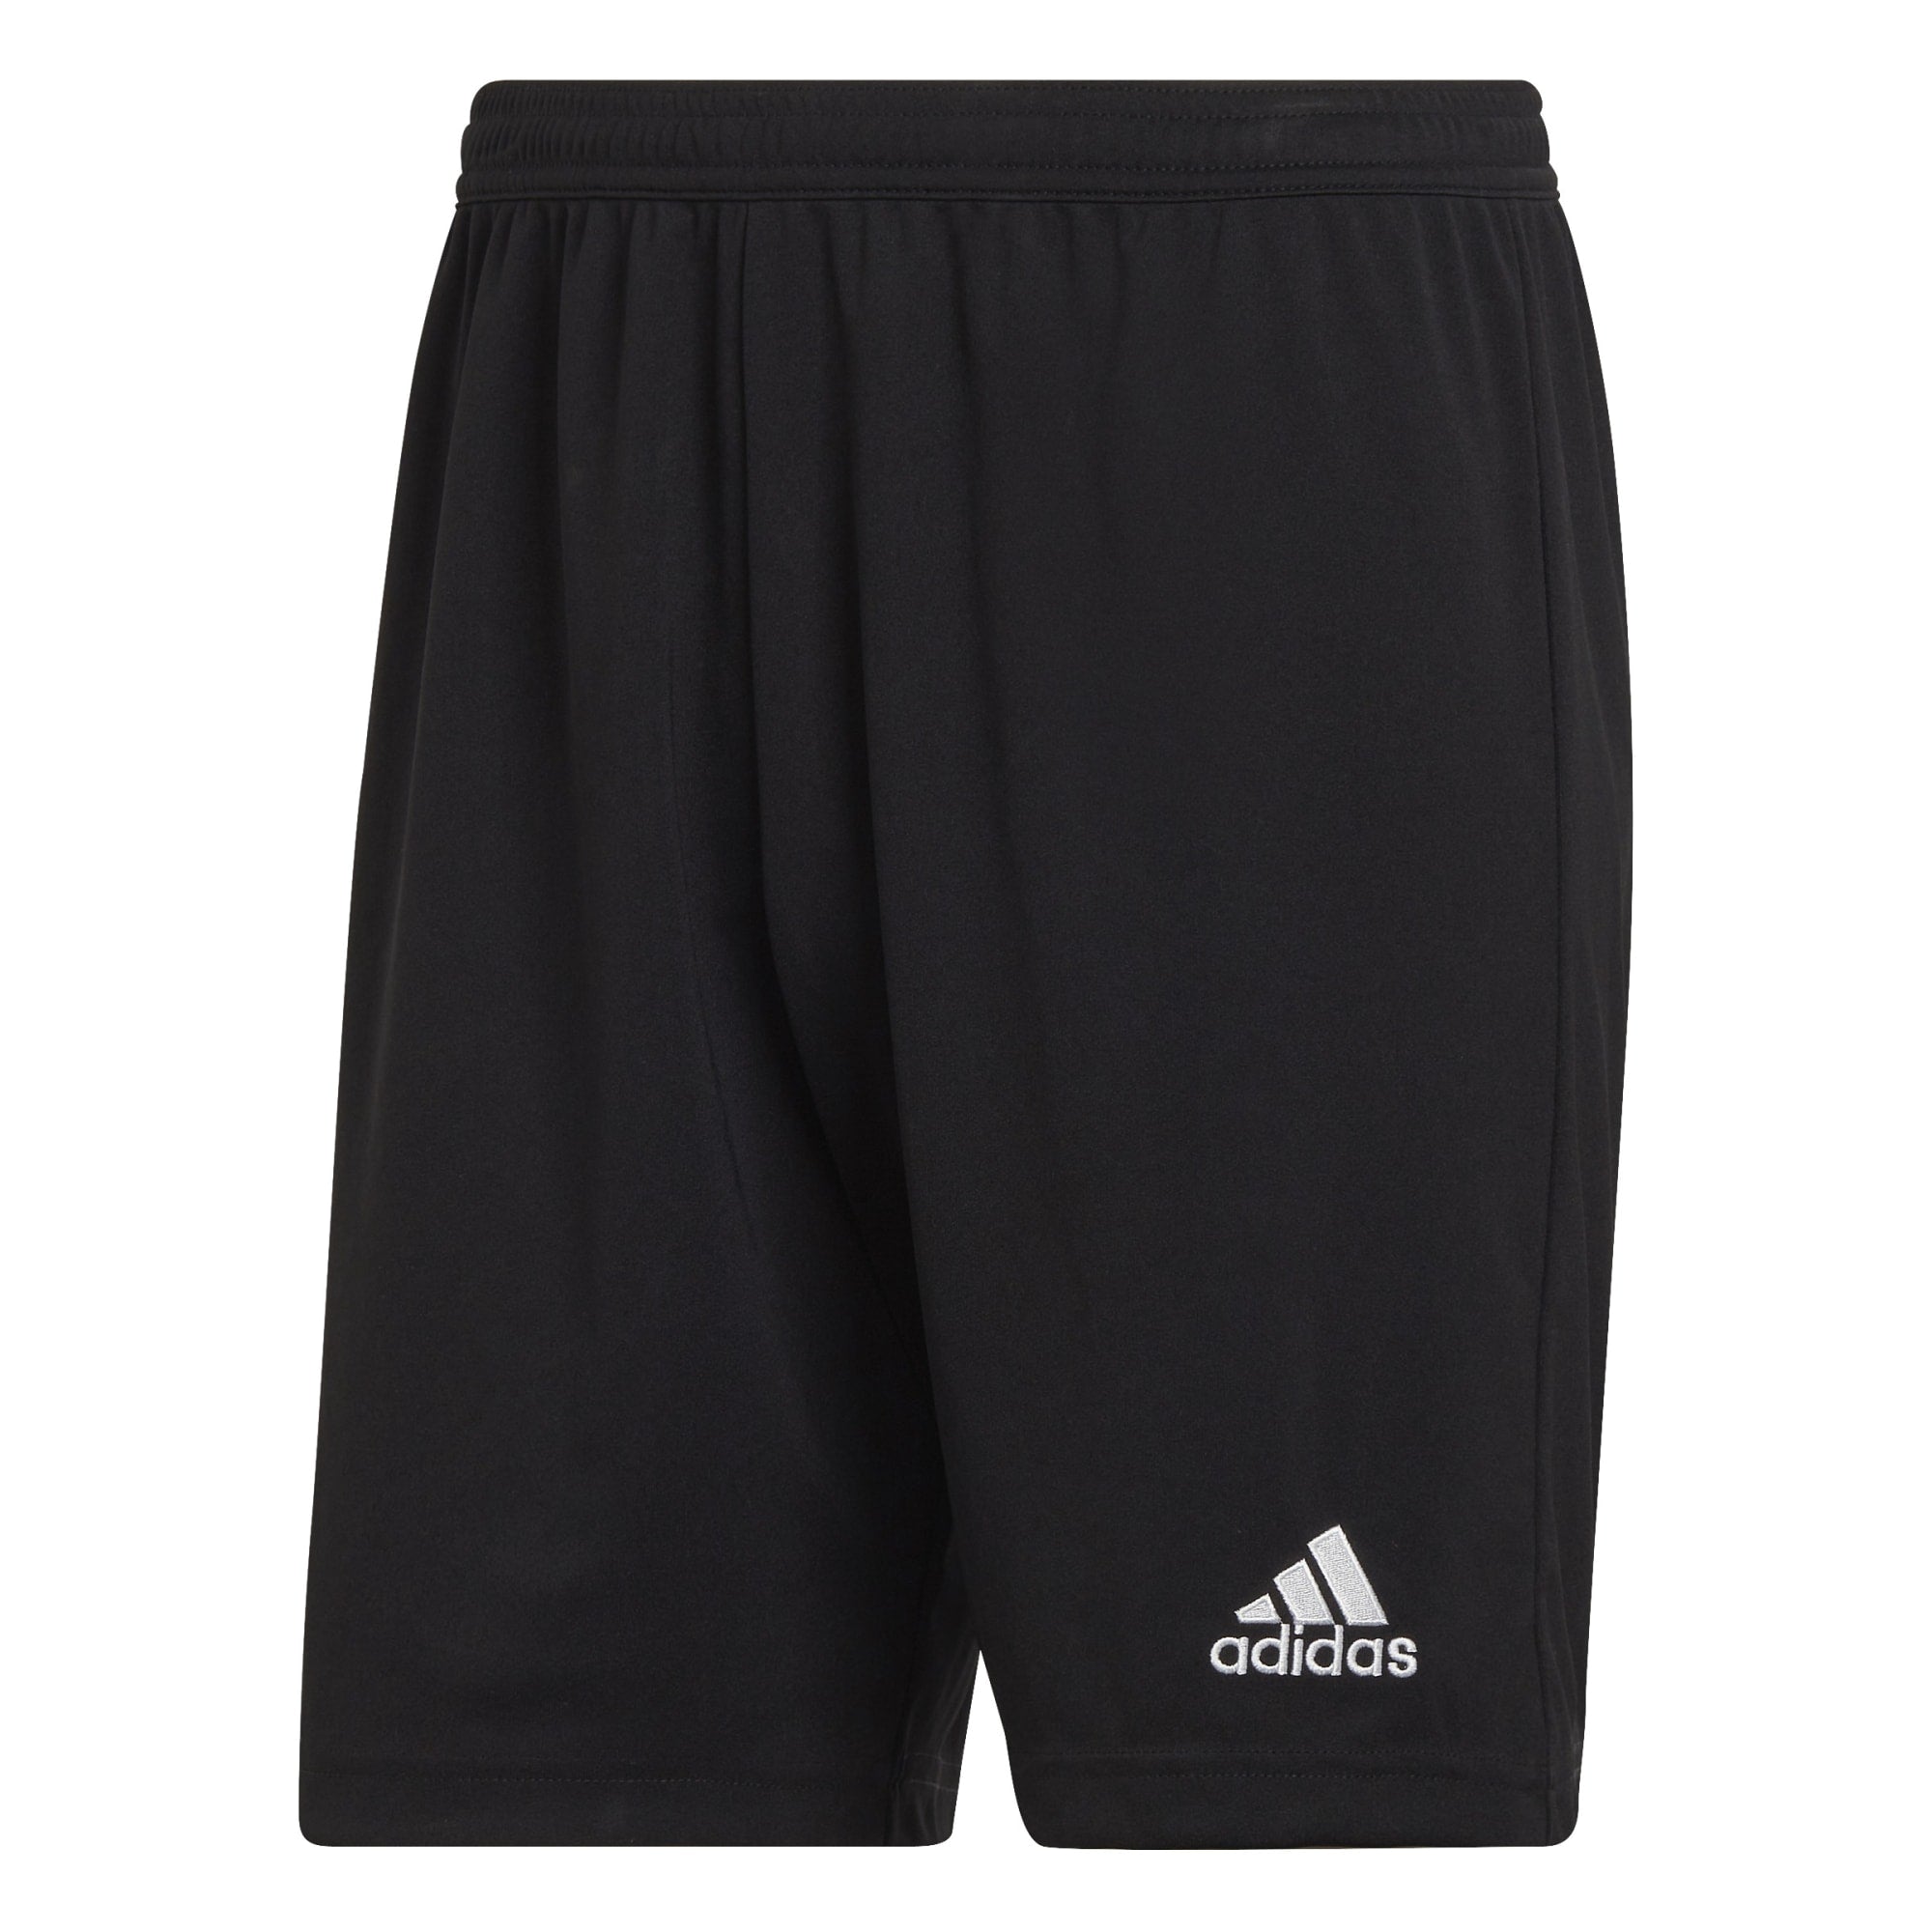 Adidas Parma Short